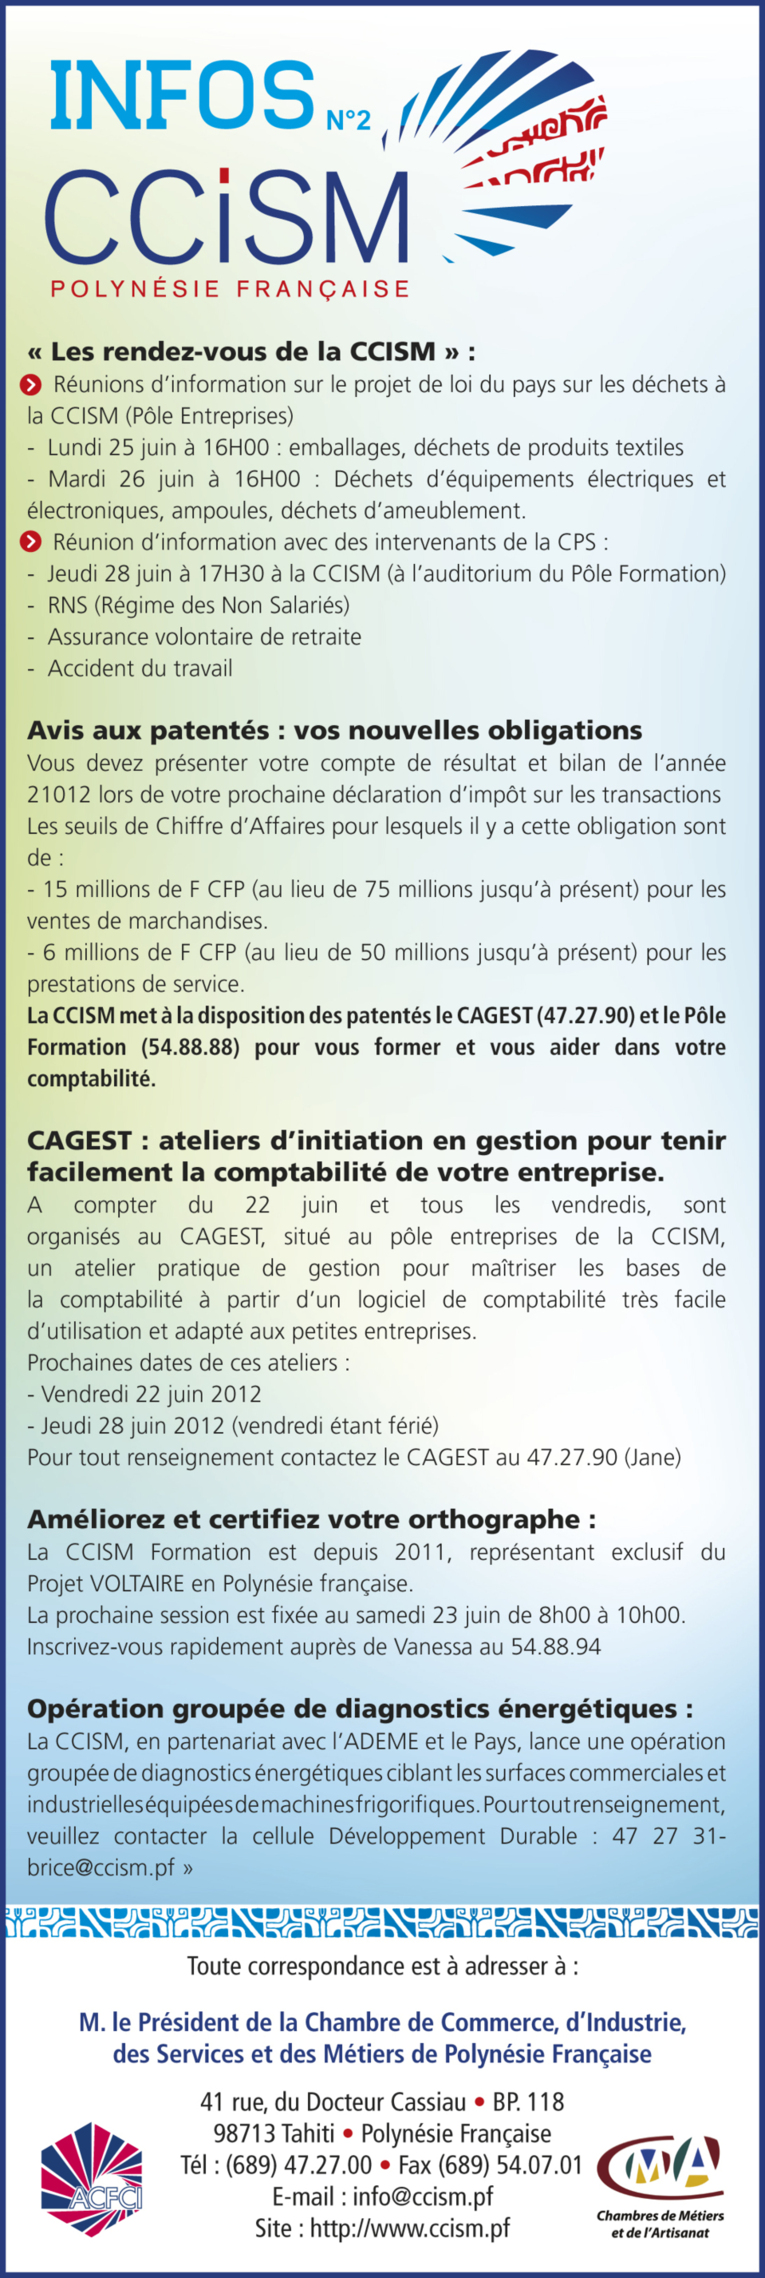 Infos CCISM N°2